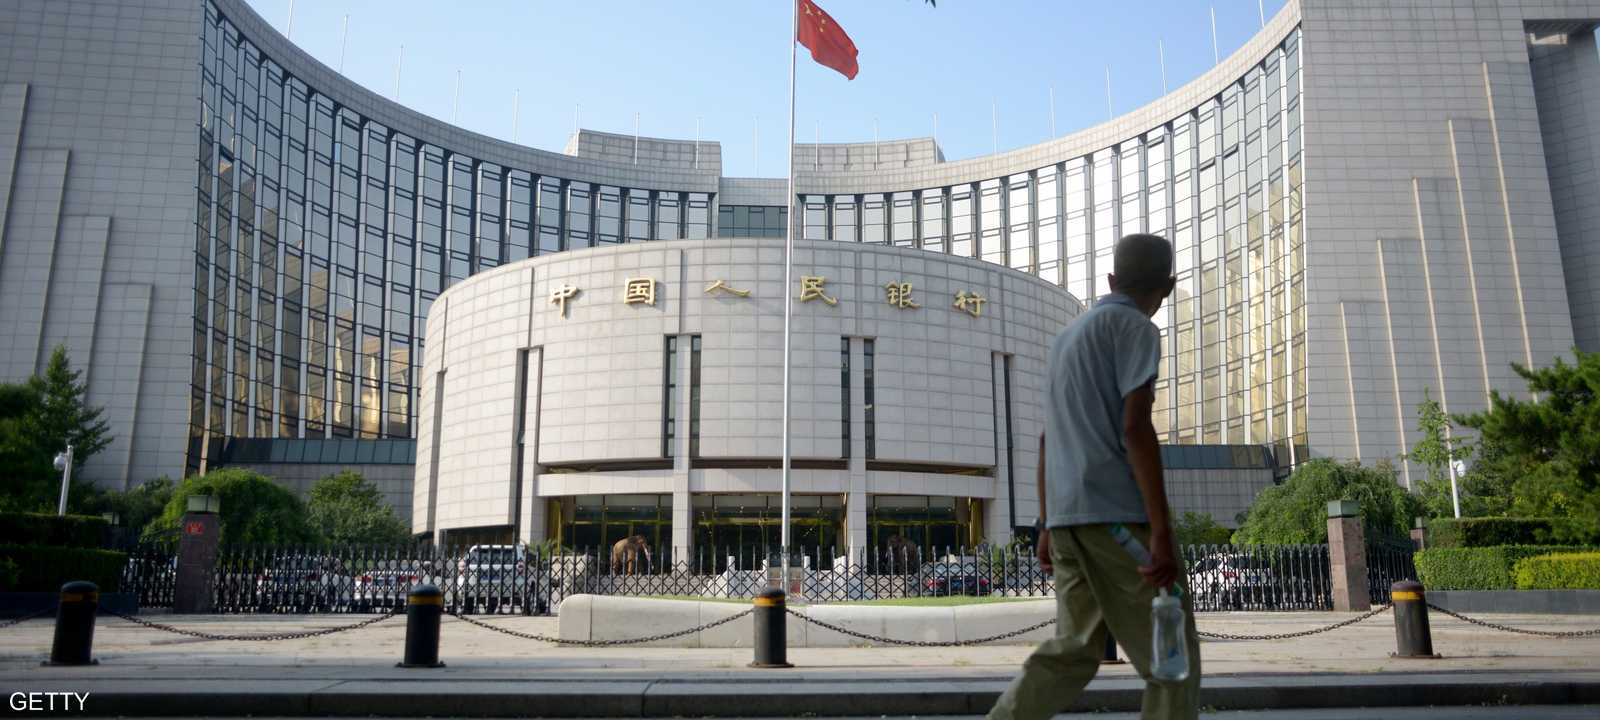 مبنى بنك الشعب الصيني في بكين